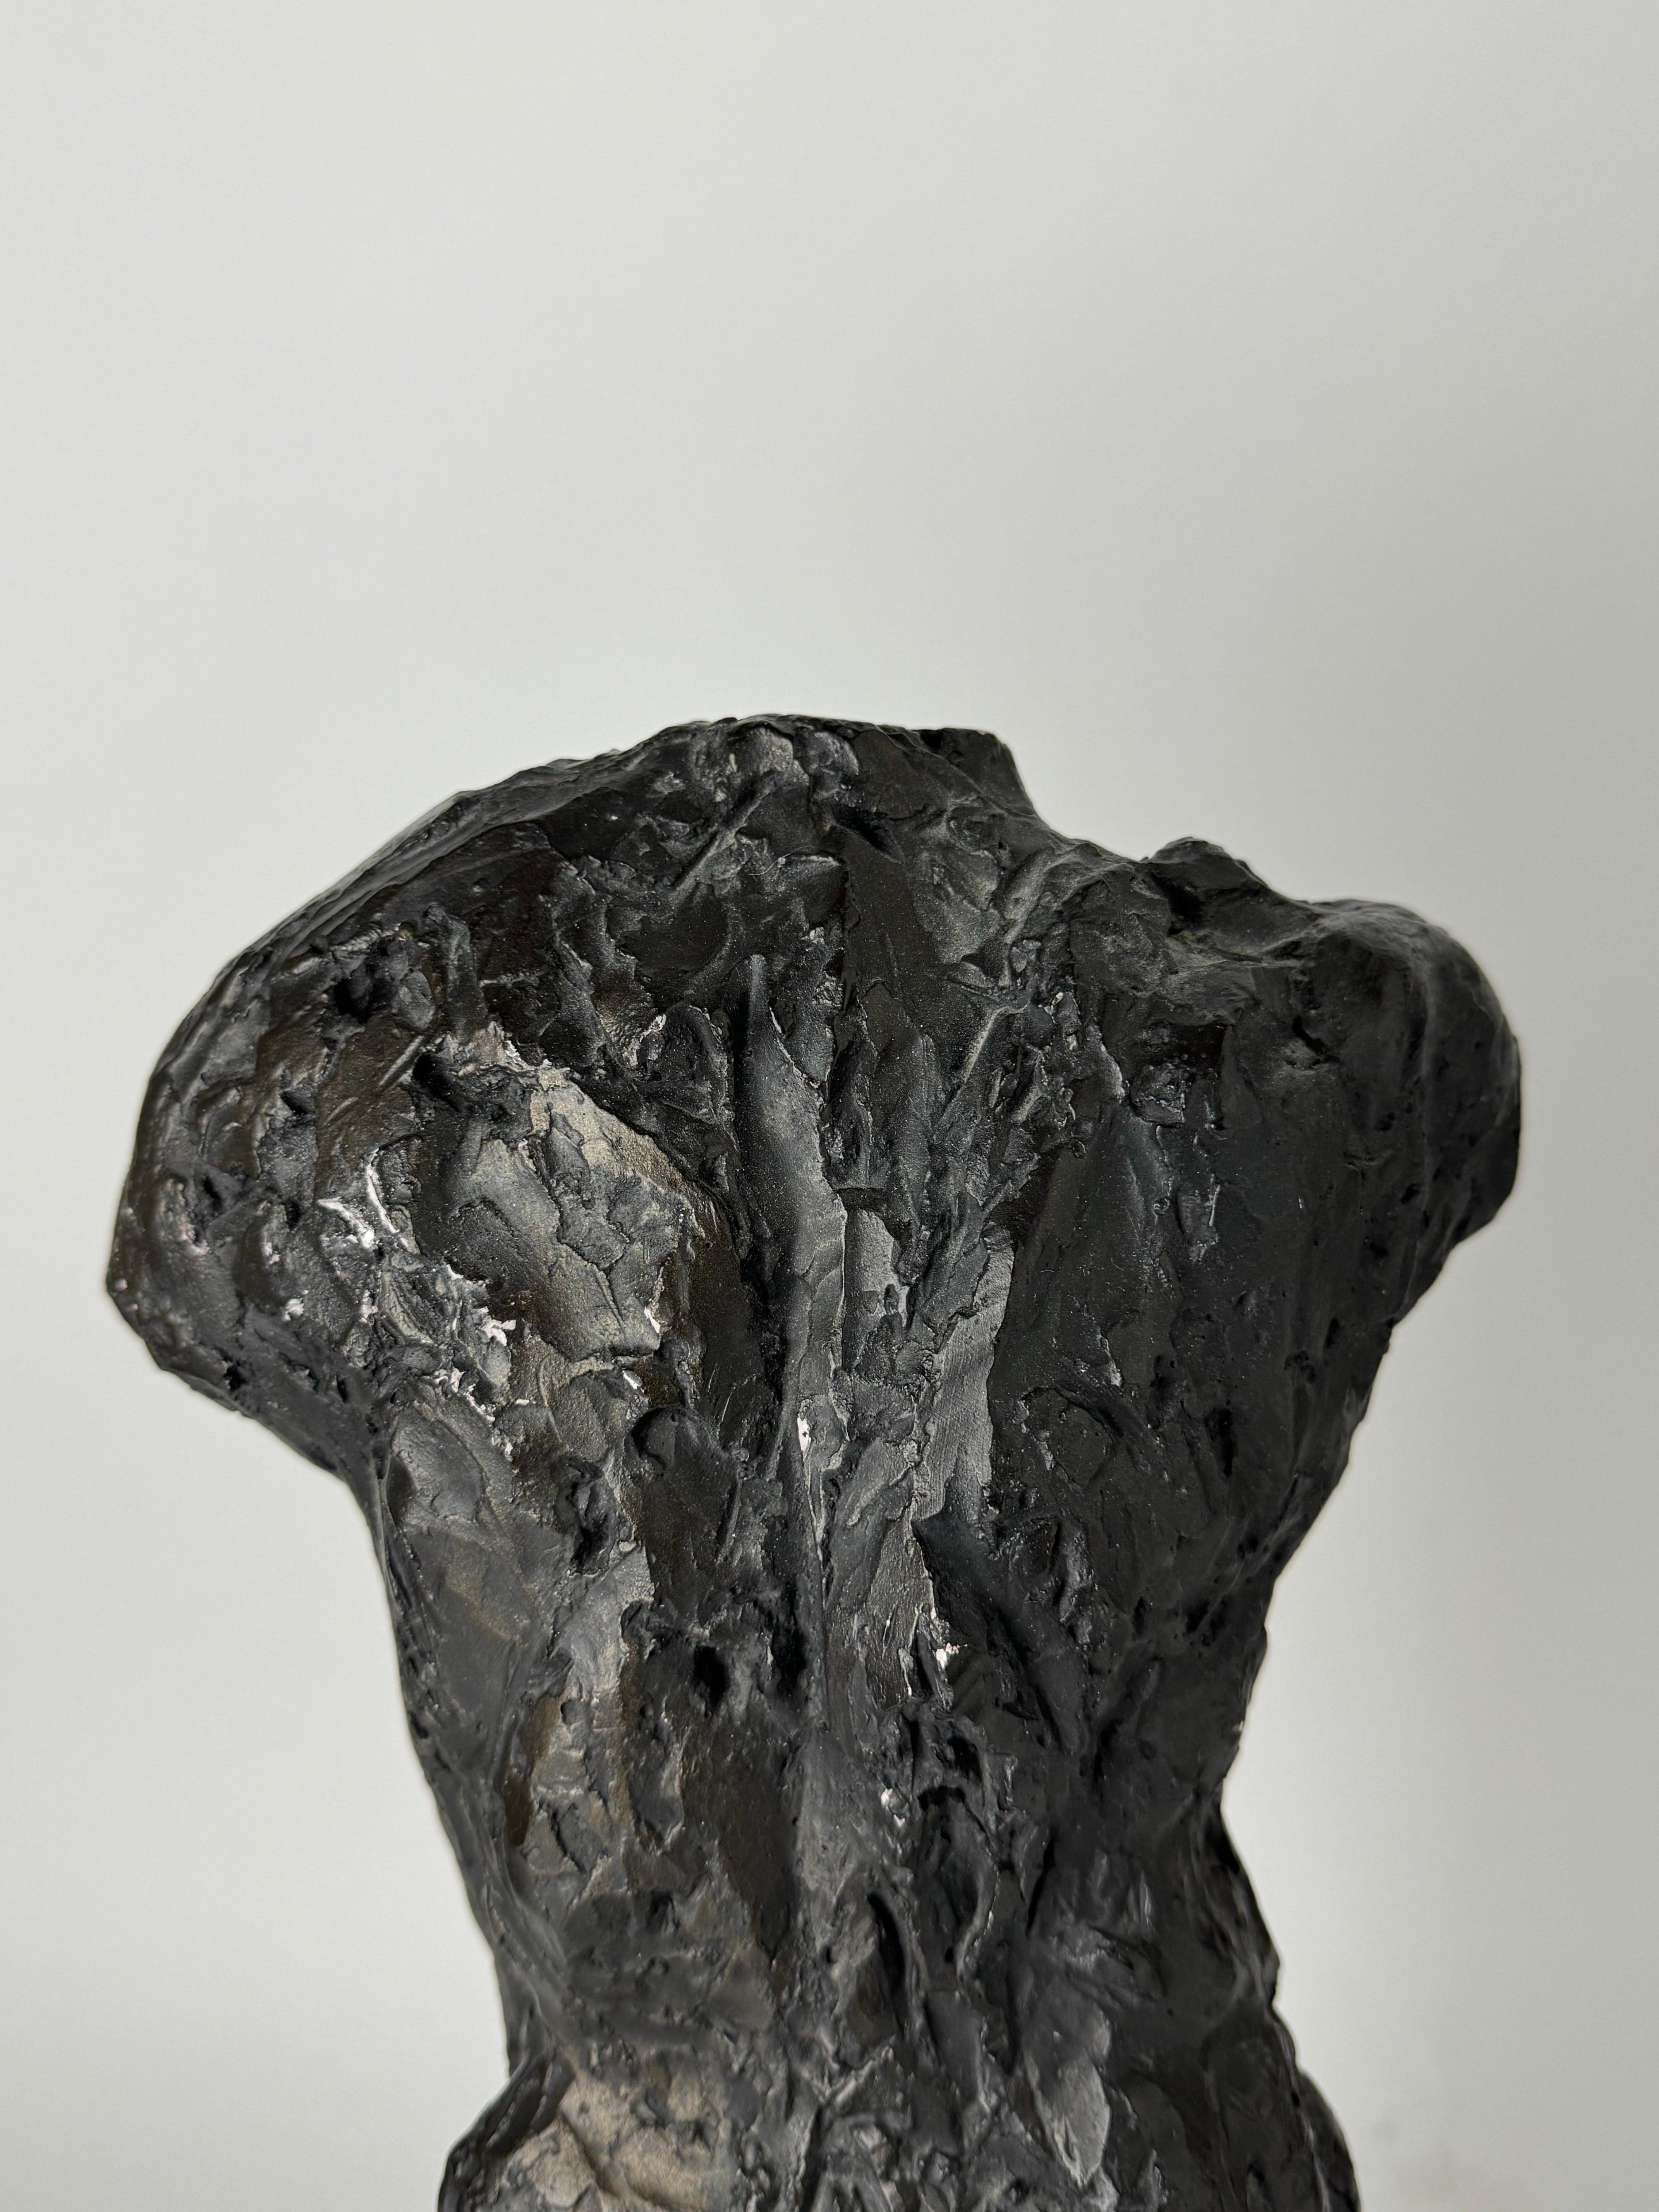 Sculpture de Rodin « Le marcheur, étude pour le torse », Austin Productions, 1963 Bon état à San Carlos, CA